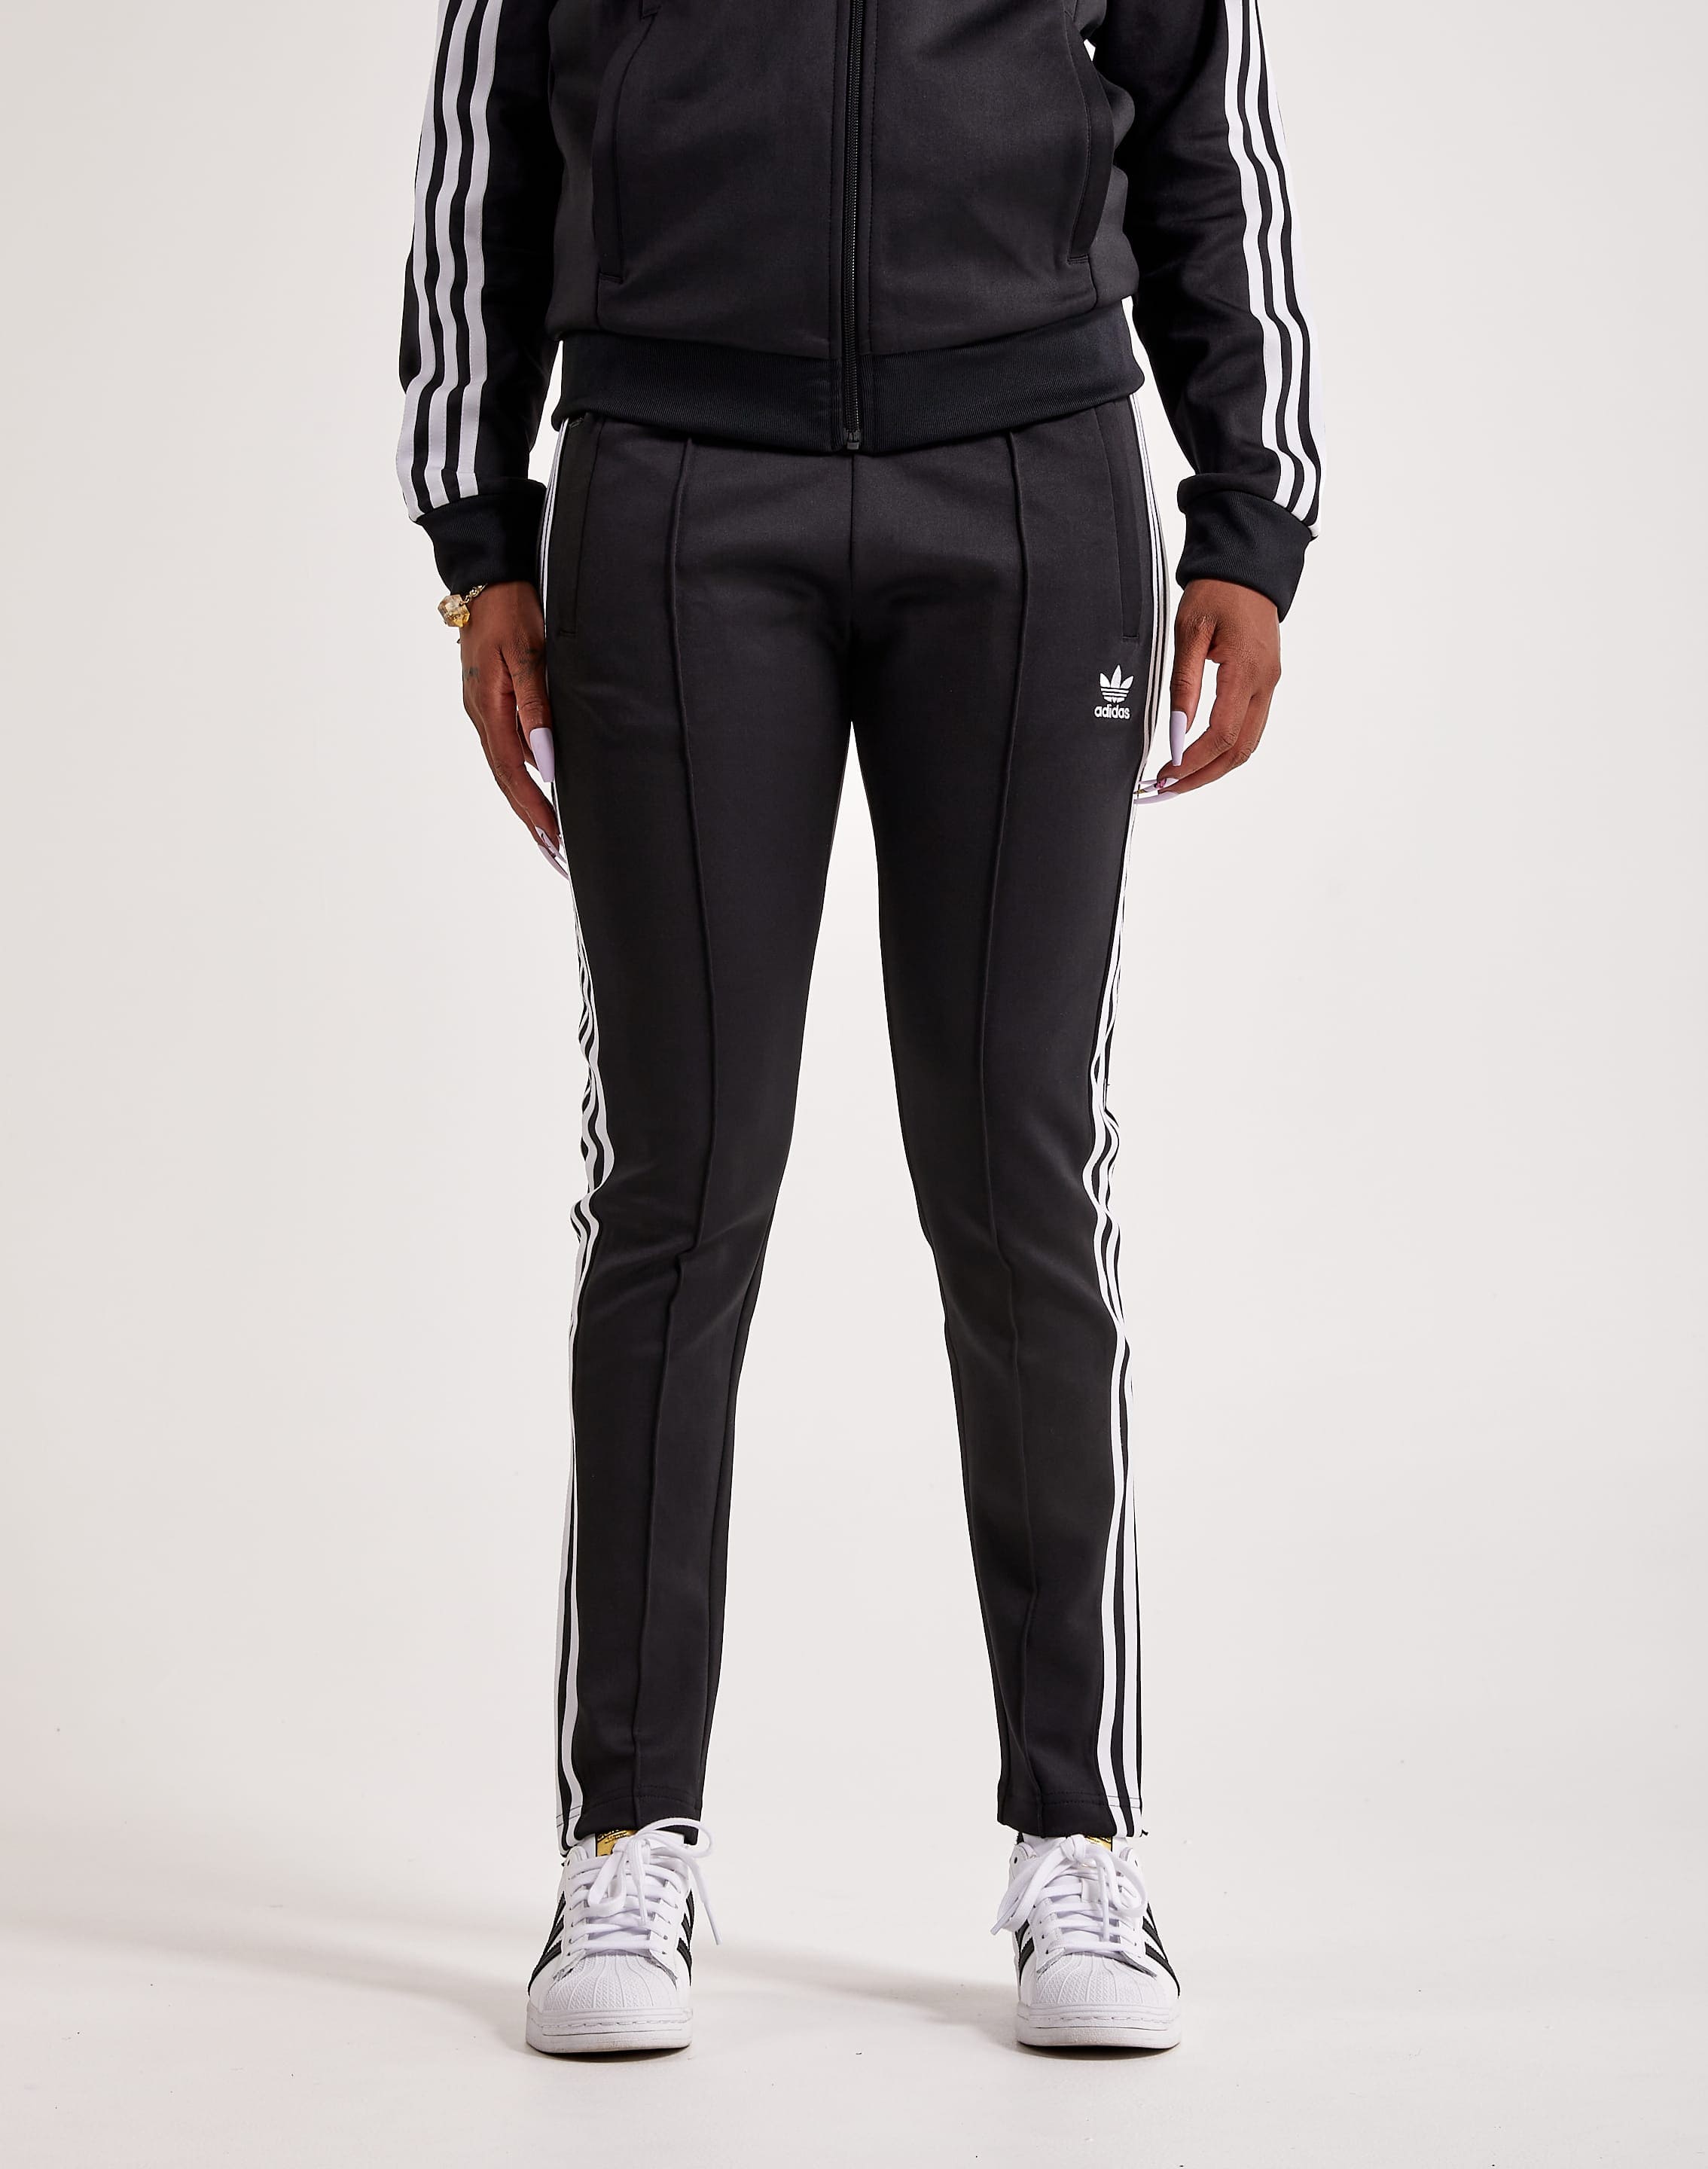 Adidas SST Track Pants